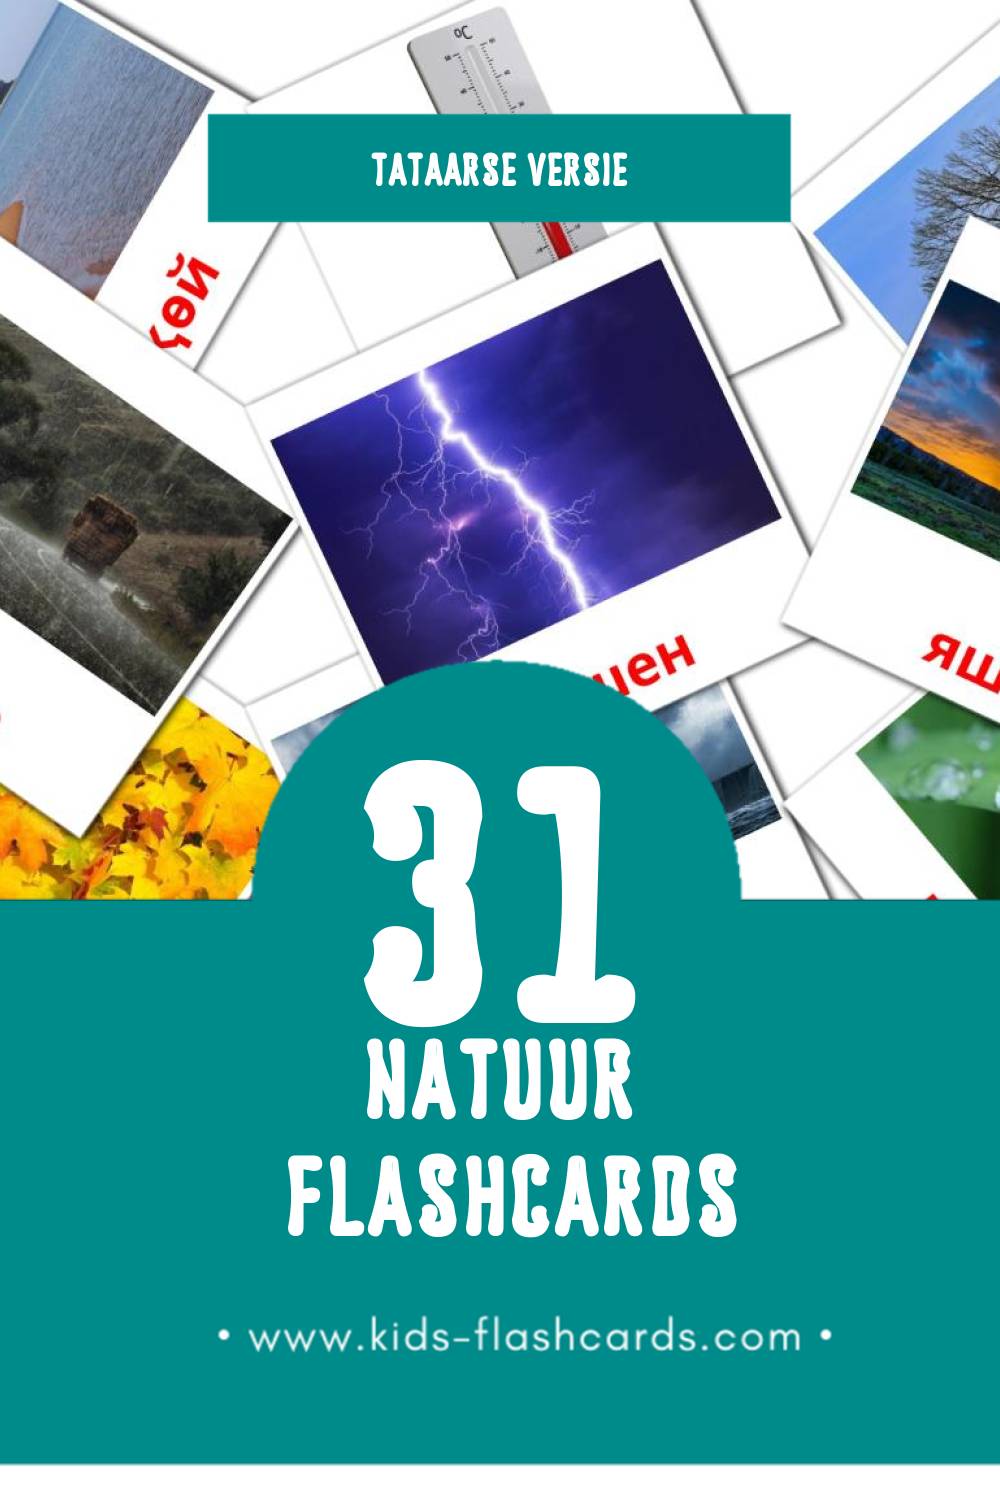 Visuele Табигать Flashcards voor Kleuters (31 kaarten in het Tataars)